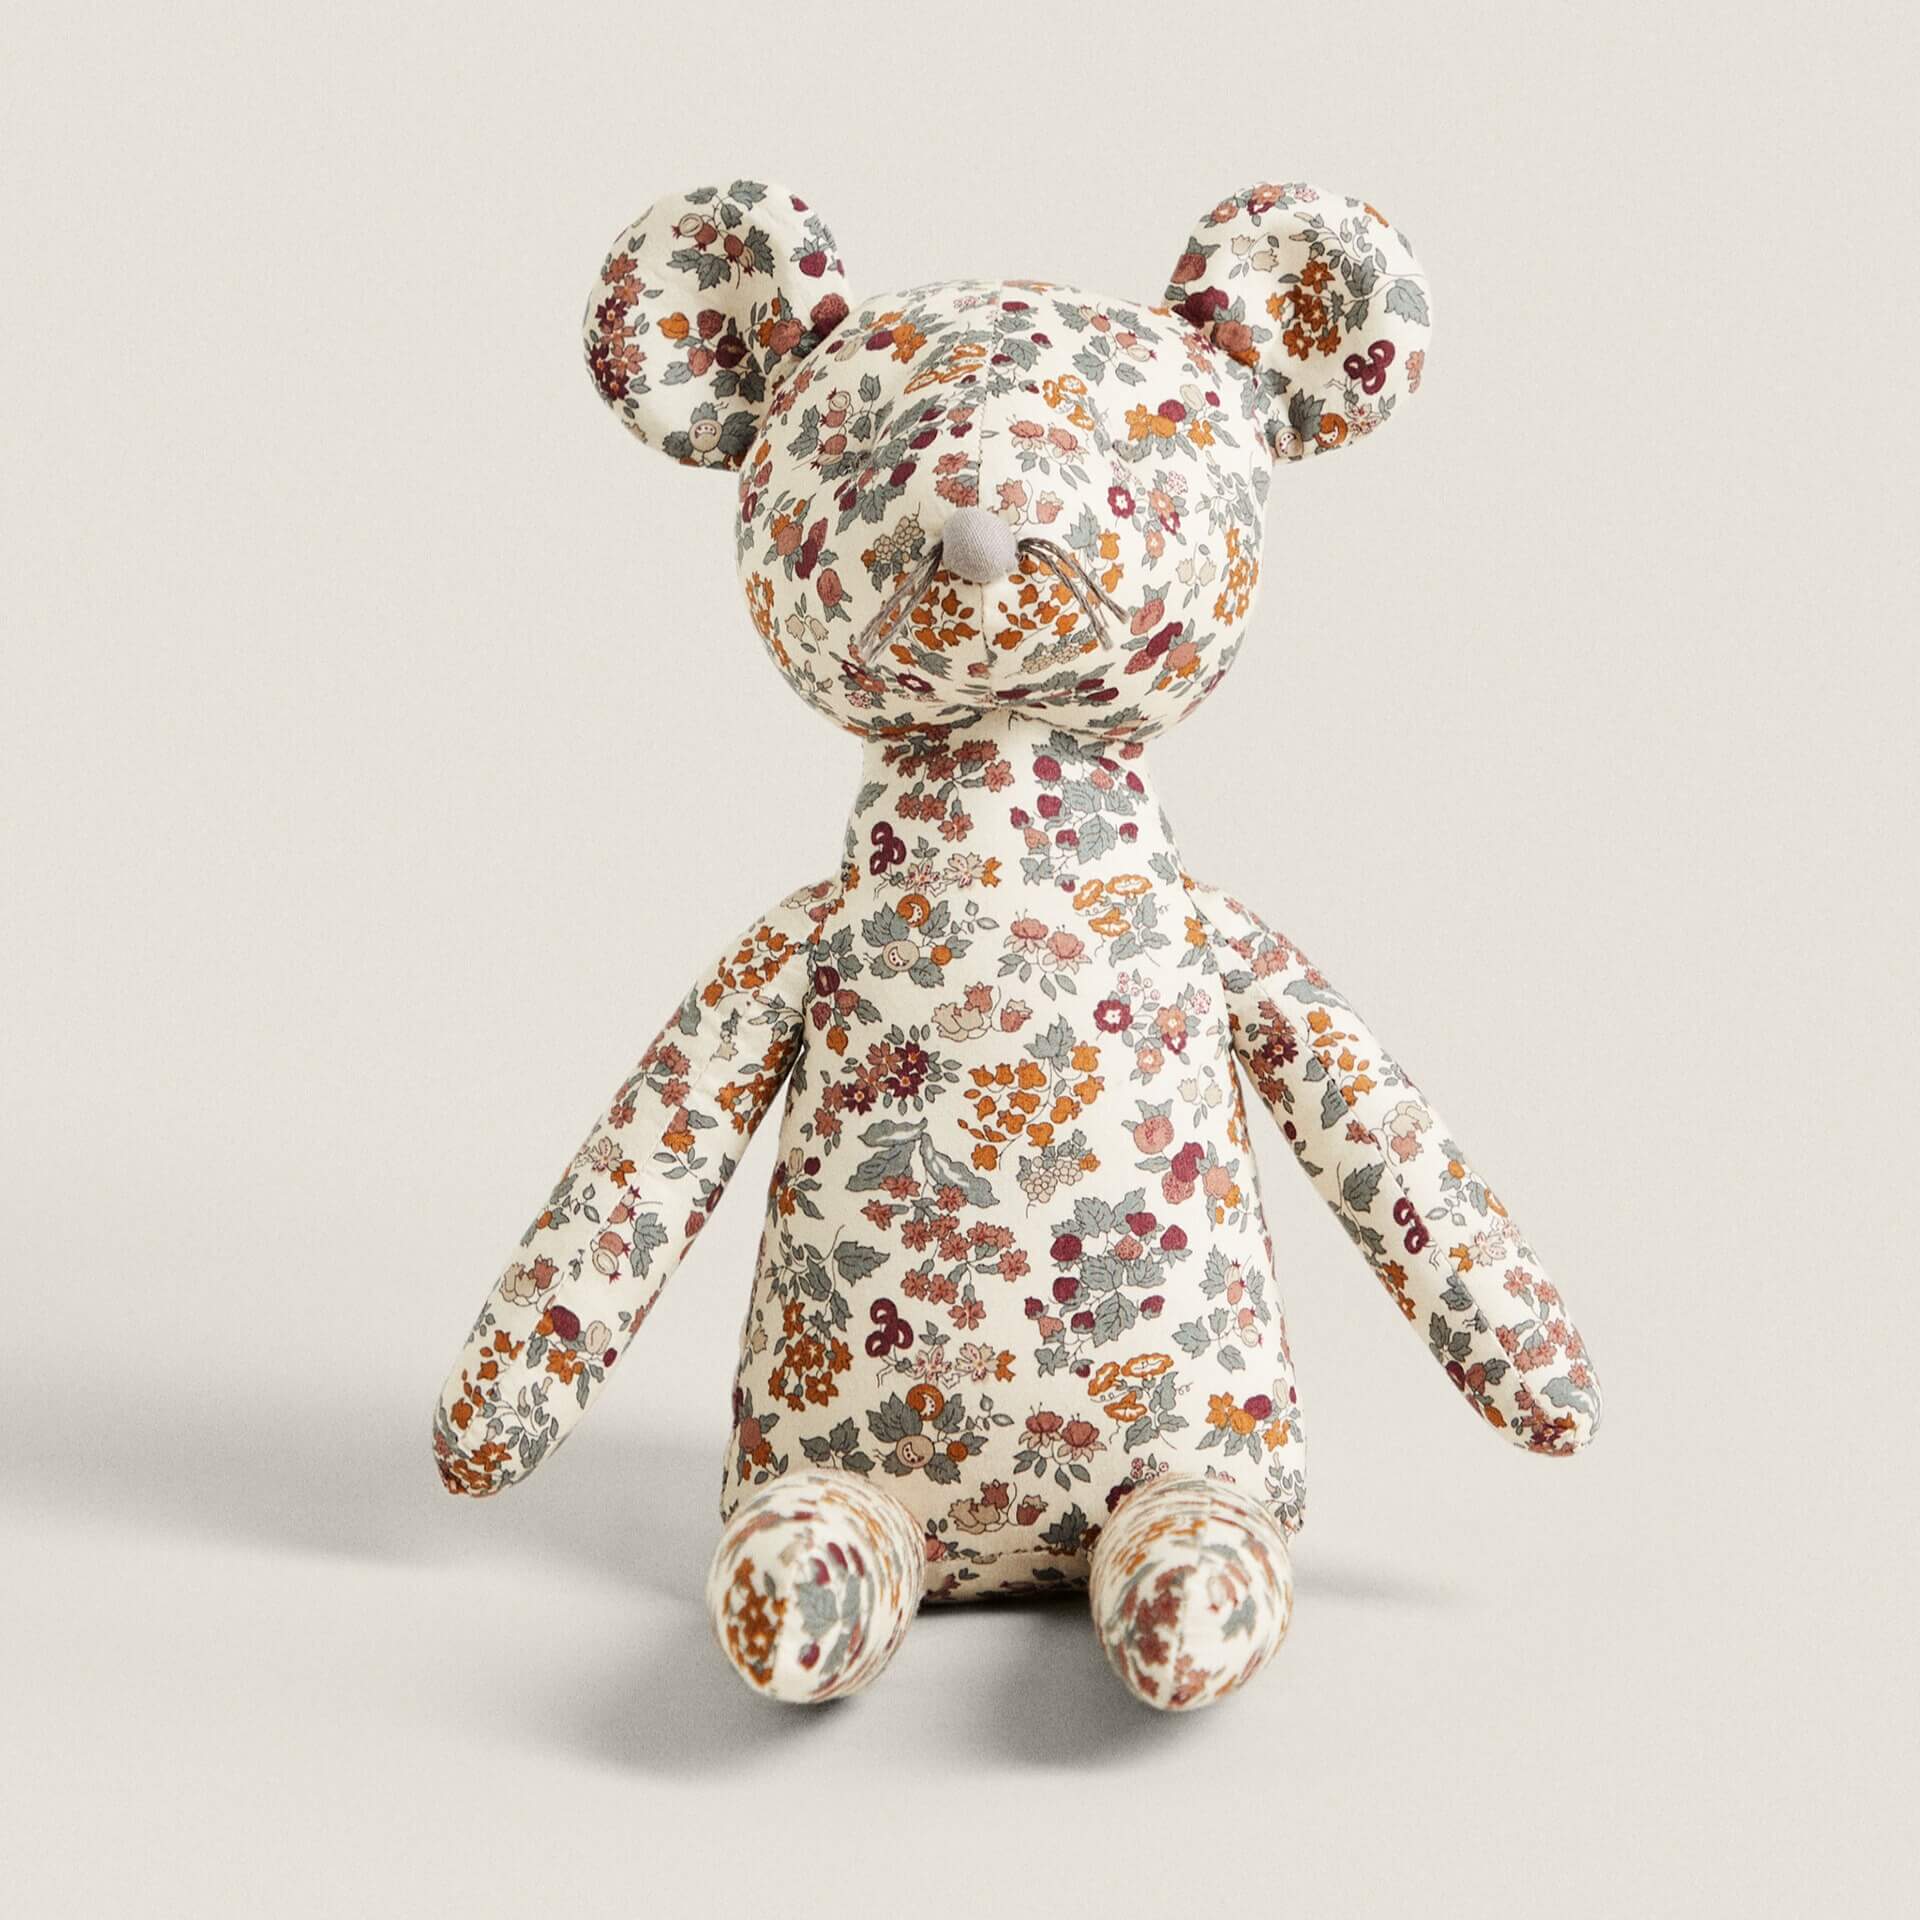 Мягкая игрушка мышка Zara Home Floral Print Fabric Children’s игрушка мягкая мышка с бусами 17см муз чип в пак